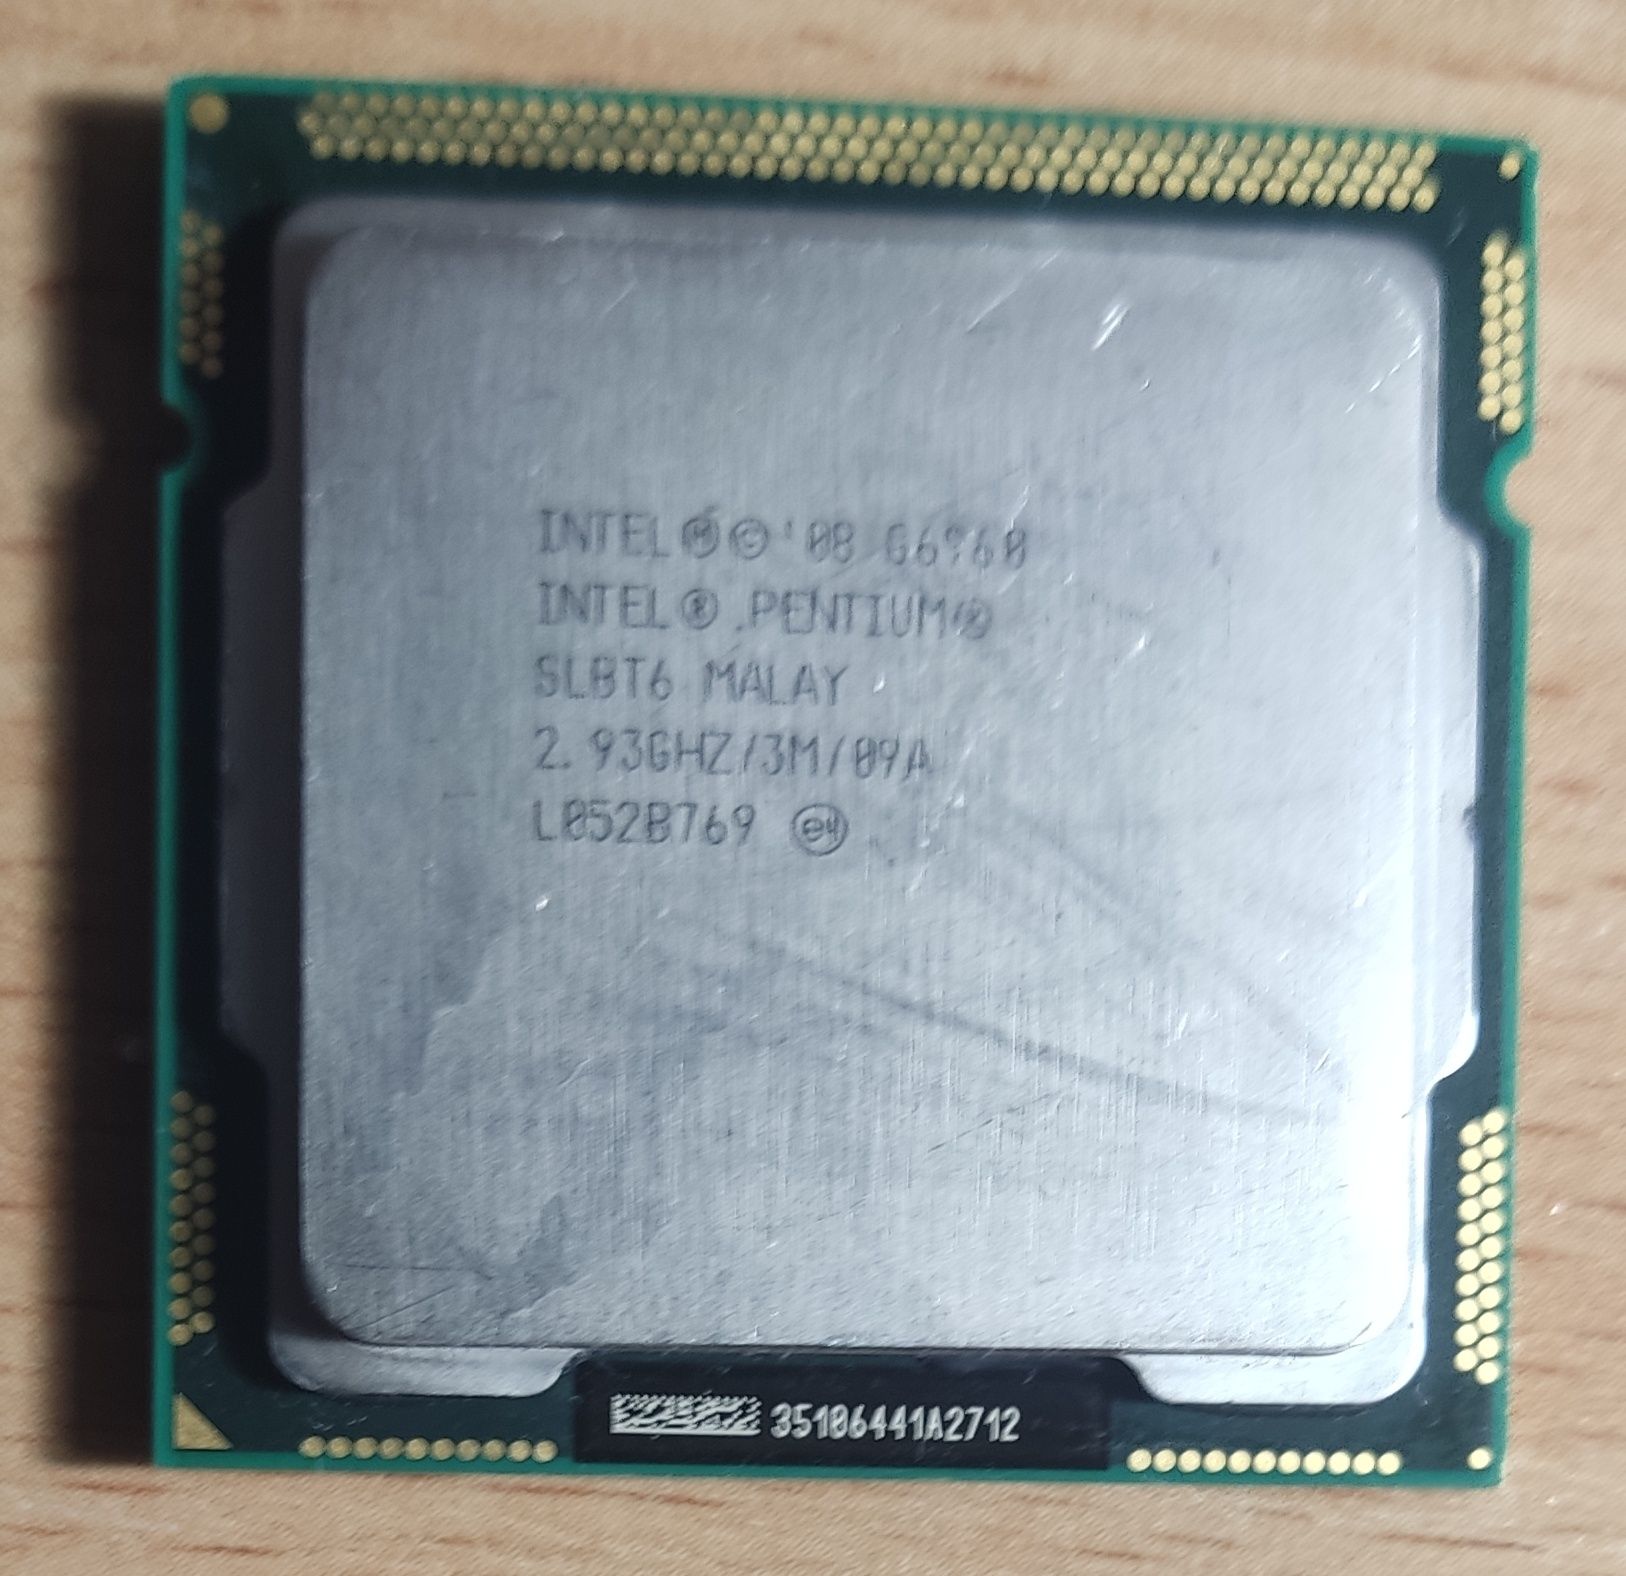 Procesor Intel Pentium i CELERON. Wszystkie 5 szt. Za 15zl!